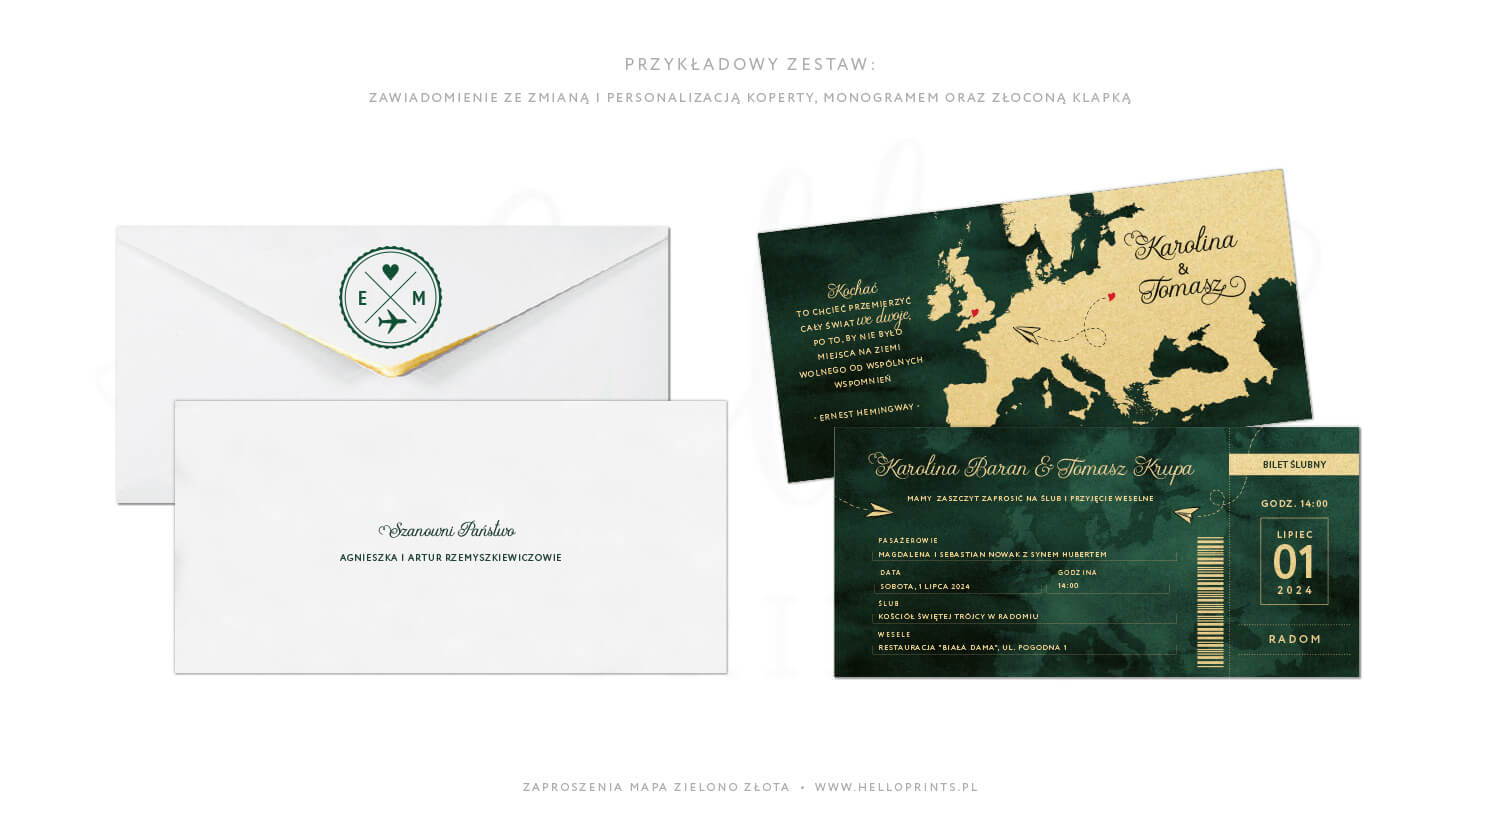 Zielono złote zaproszenia paszport ślubny z białą kopertą ze złoconą klapką